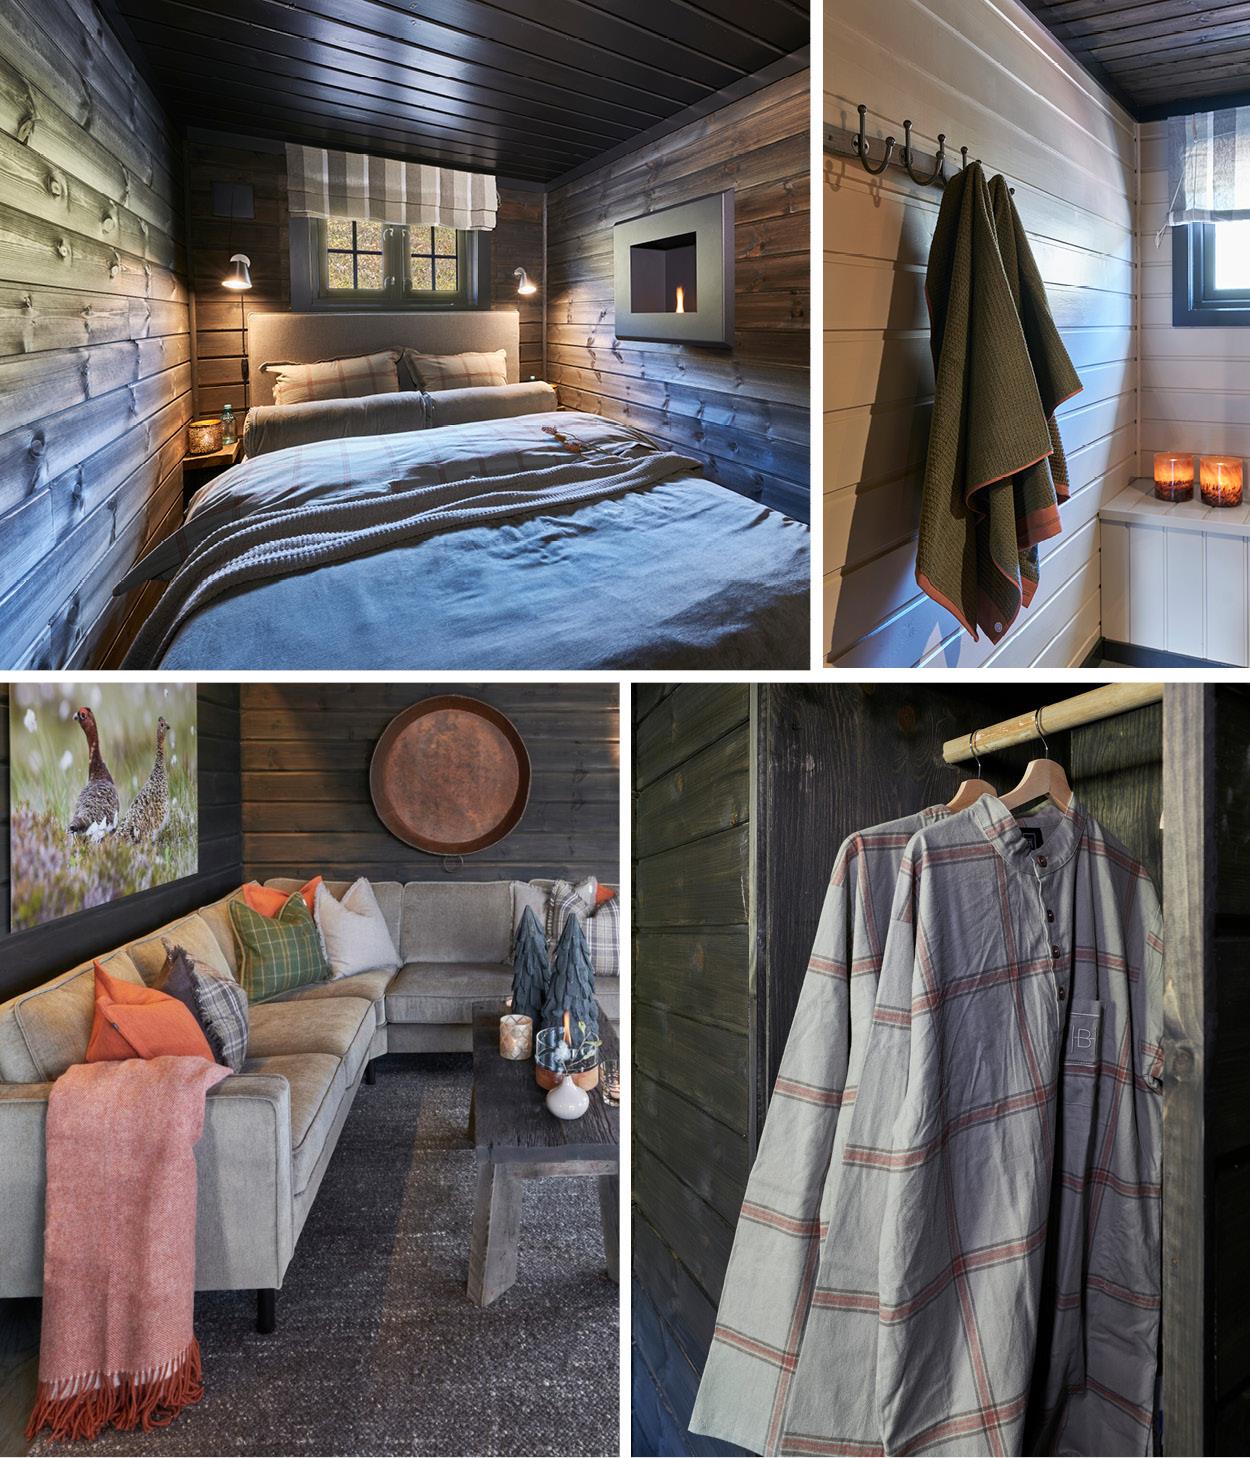 Interiørbilder av sengetøy, håndklær, pledd og nattskjorte på hytta. Bilde